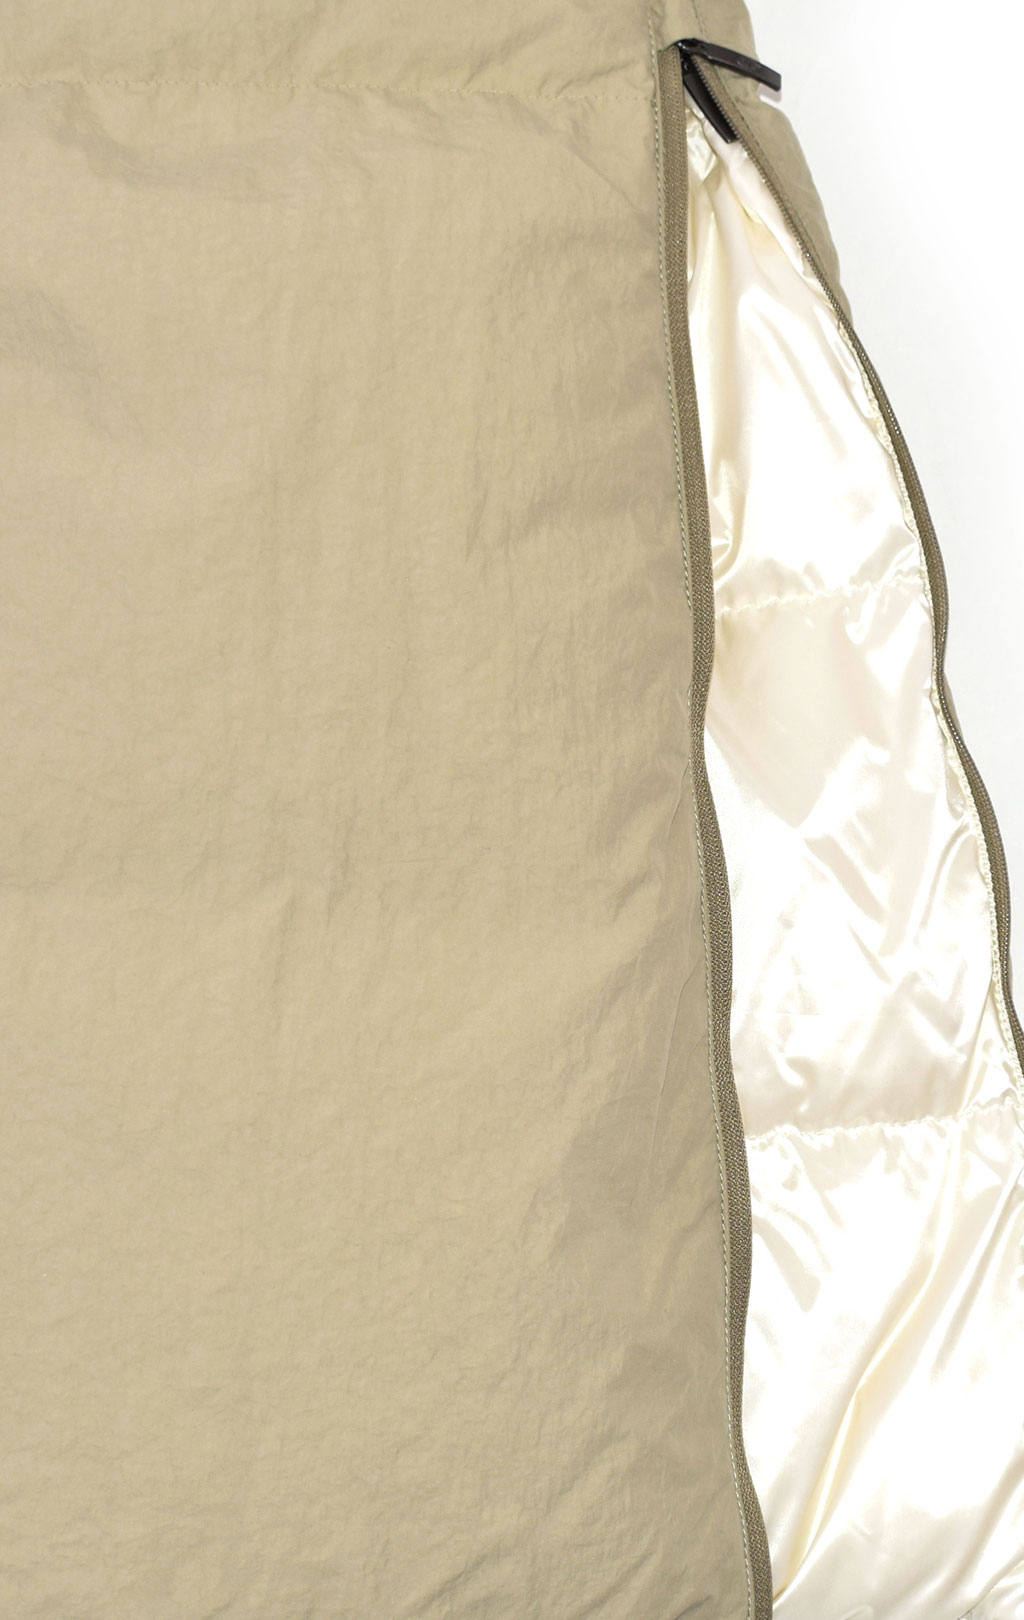 Женское пальто пуховое PARAJUMPERS SLEEPING BAG двустороннее FW 20/21 overcast/off white 